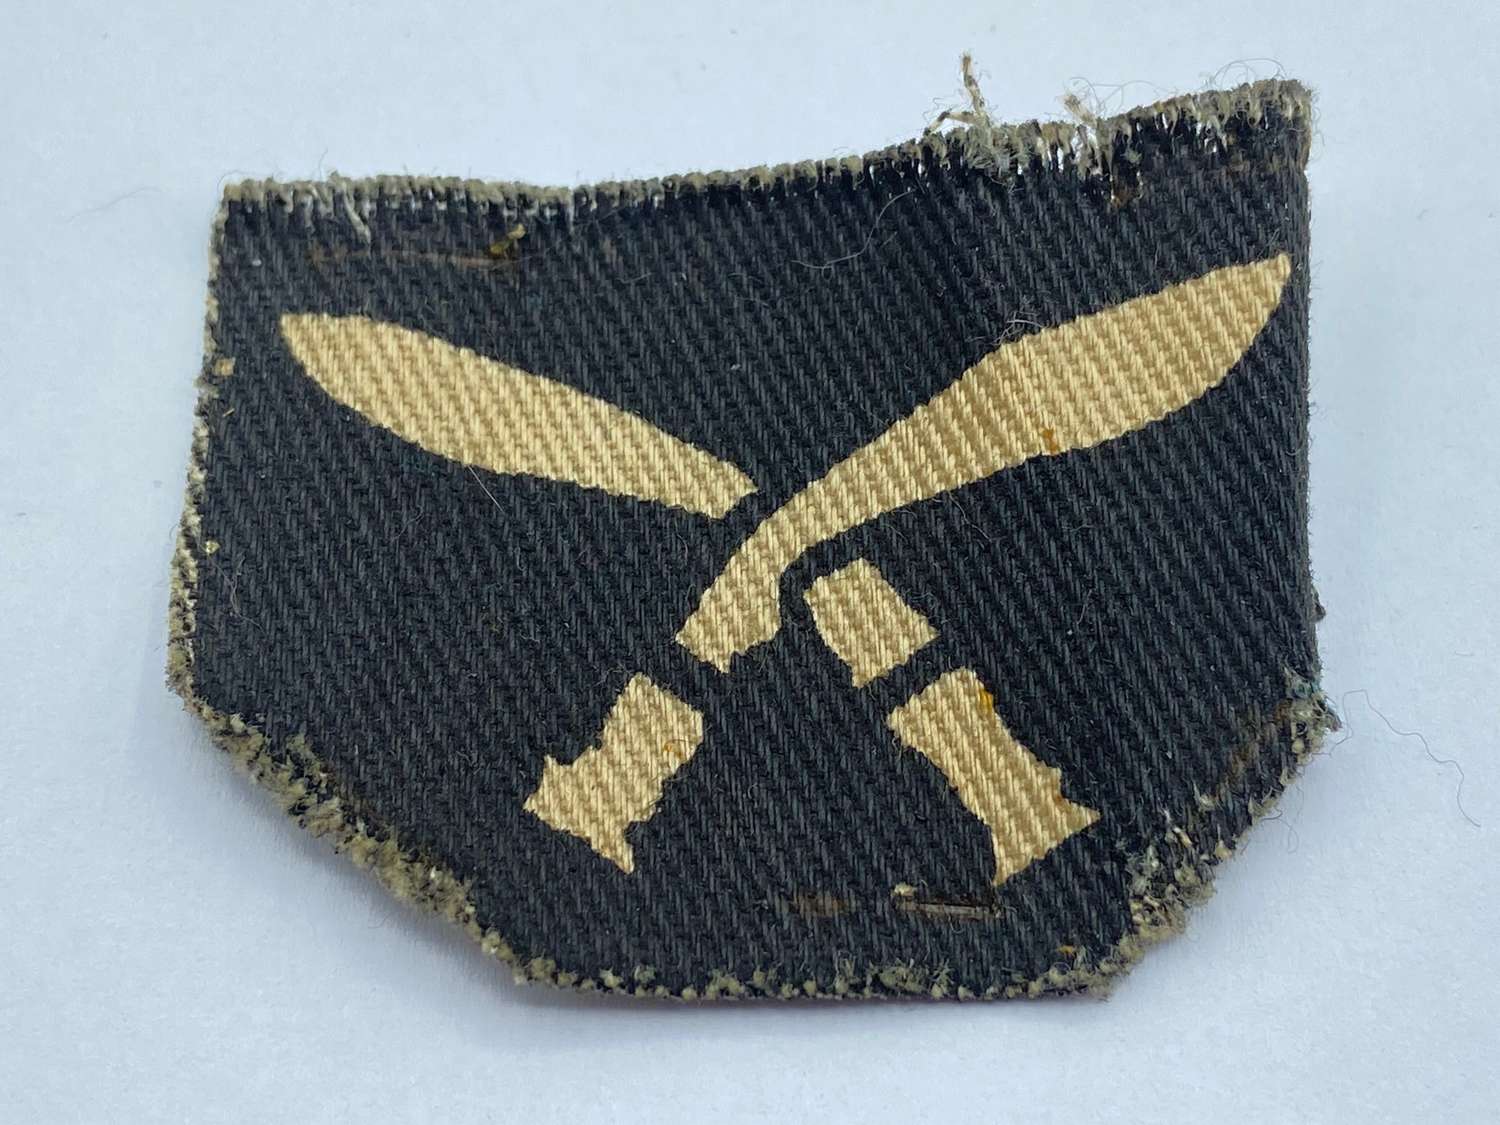 Cut Post WW2 17th Gurkha Brigade Printed Cloth Formation Sign Patch